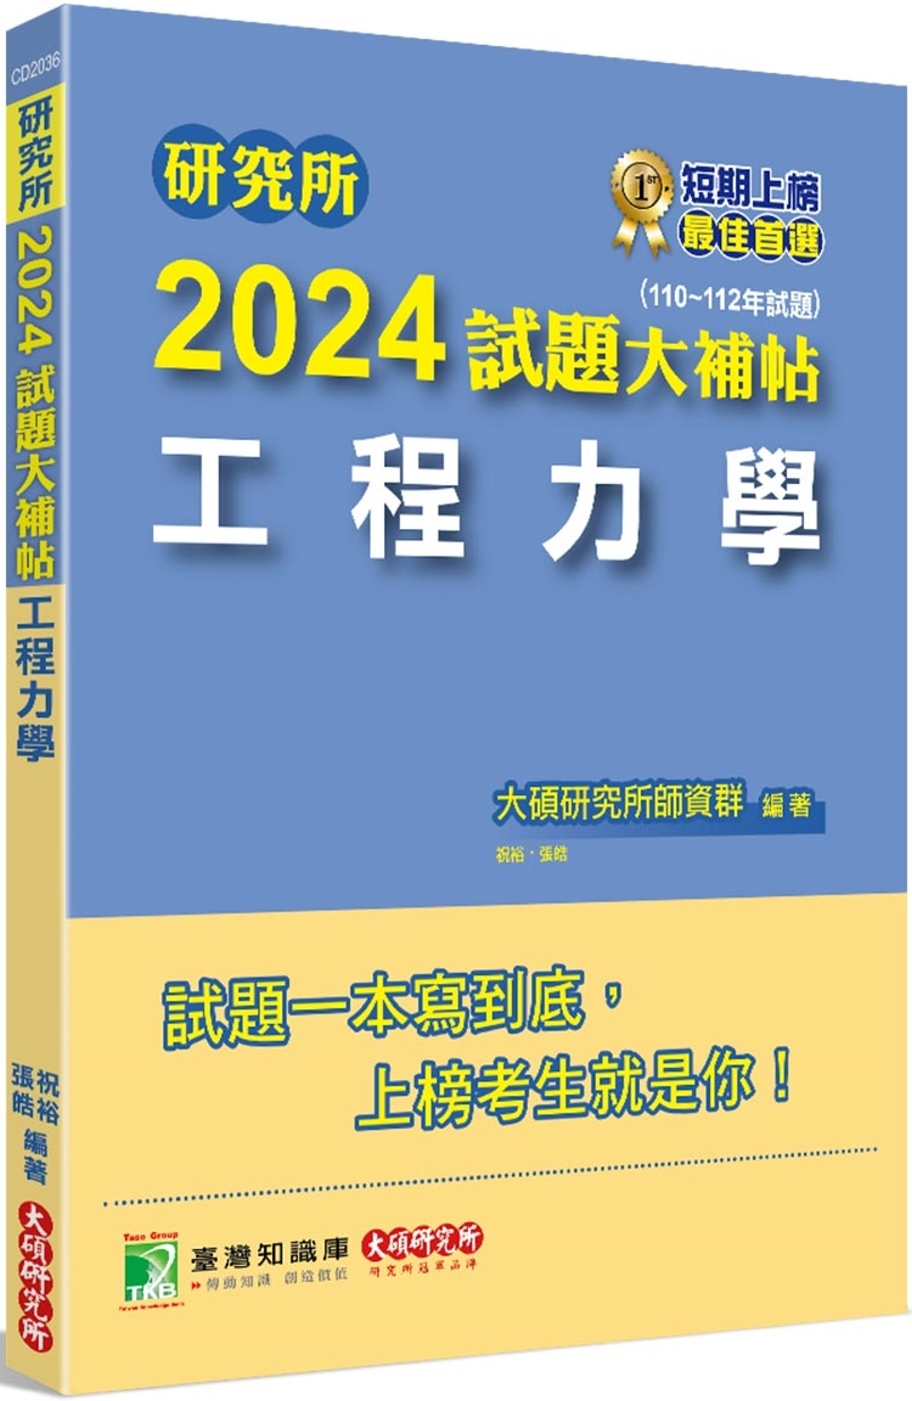 研究所2024試題大補帖【工程力學】(110~112年試題)...